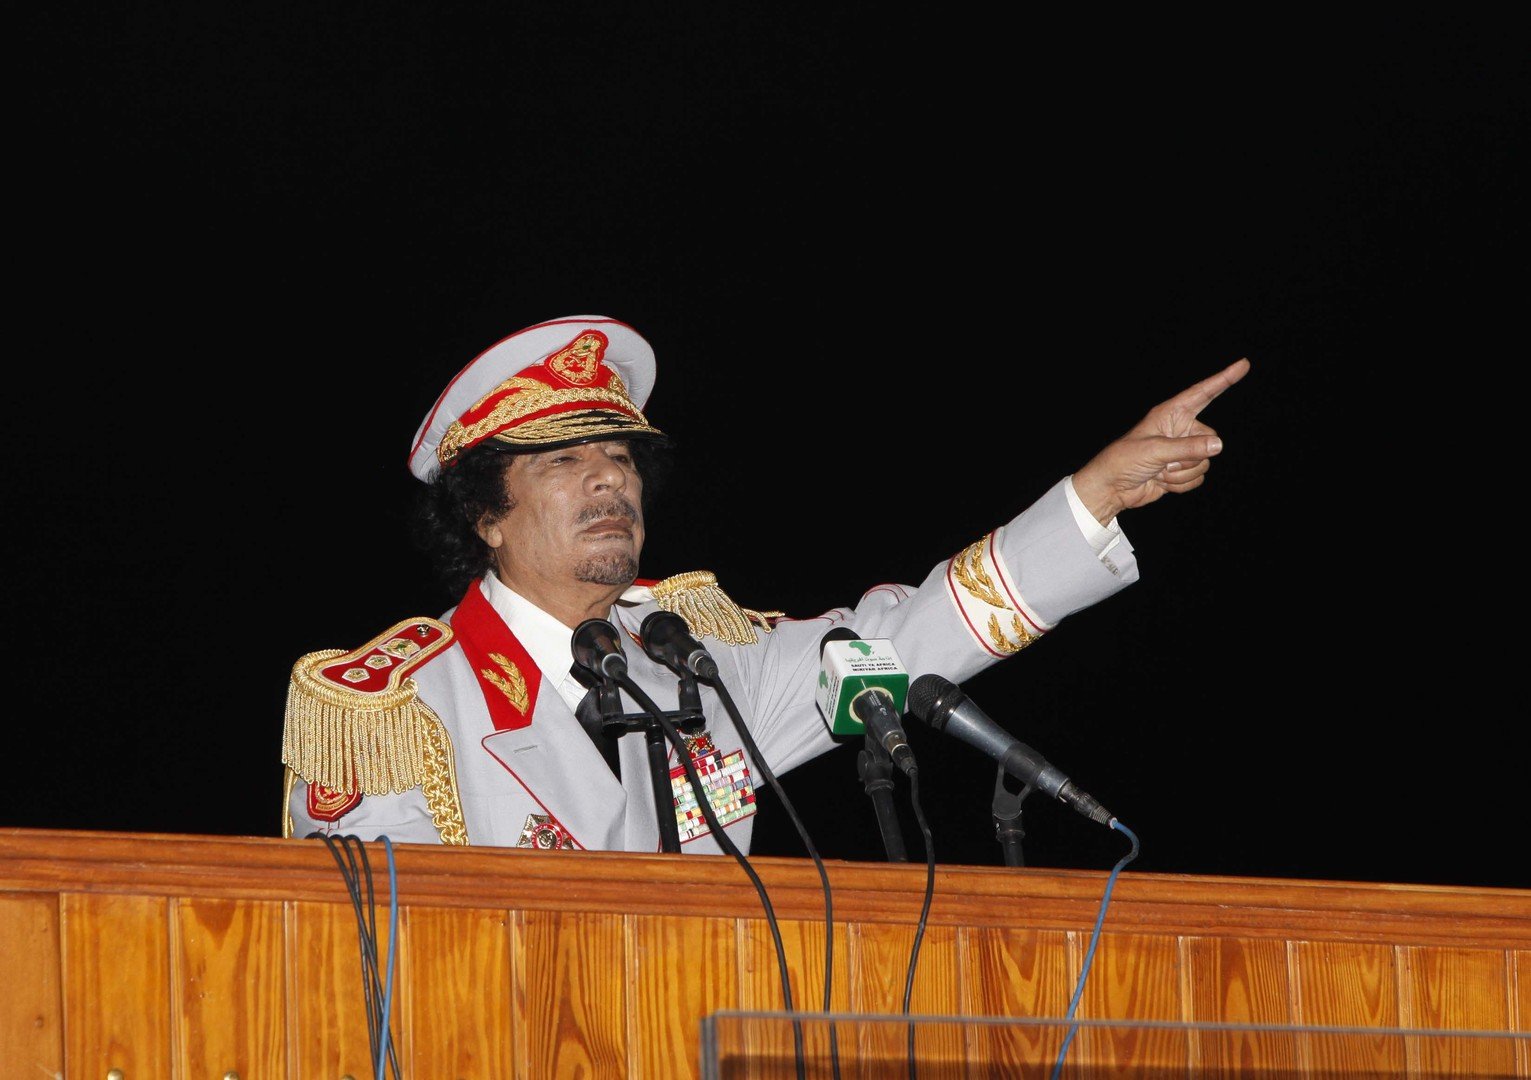 أضحية القذافي حاضرة حتى بعد غيابه!